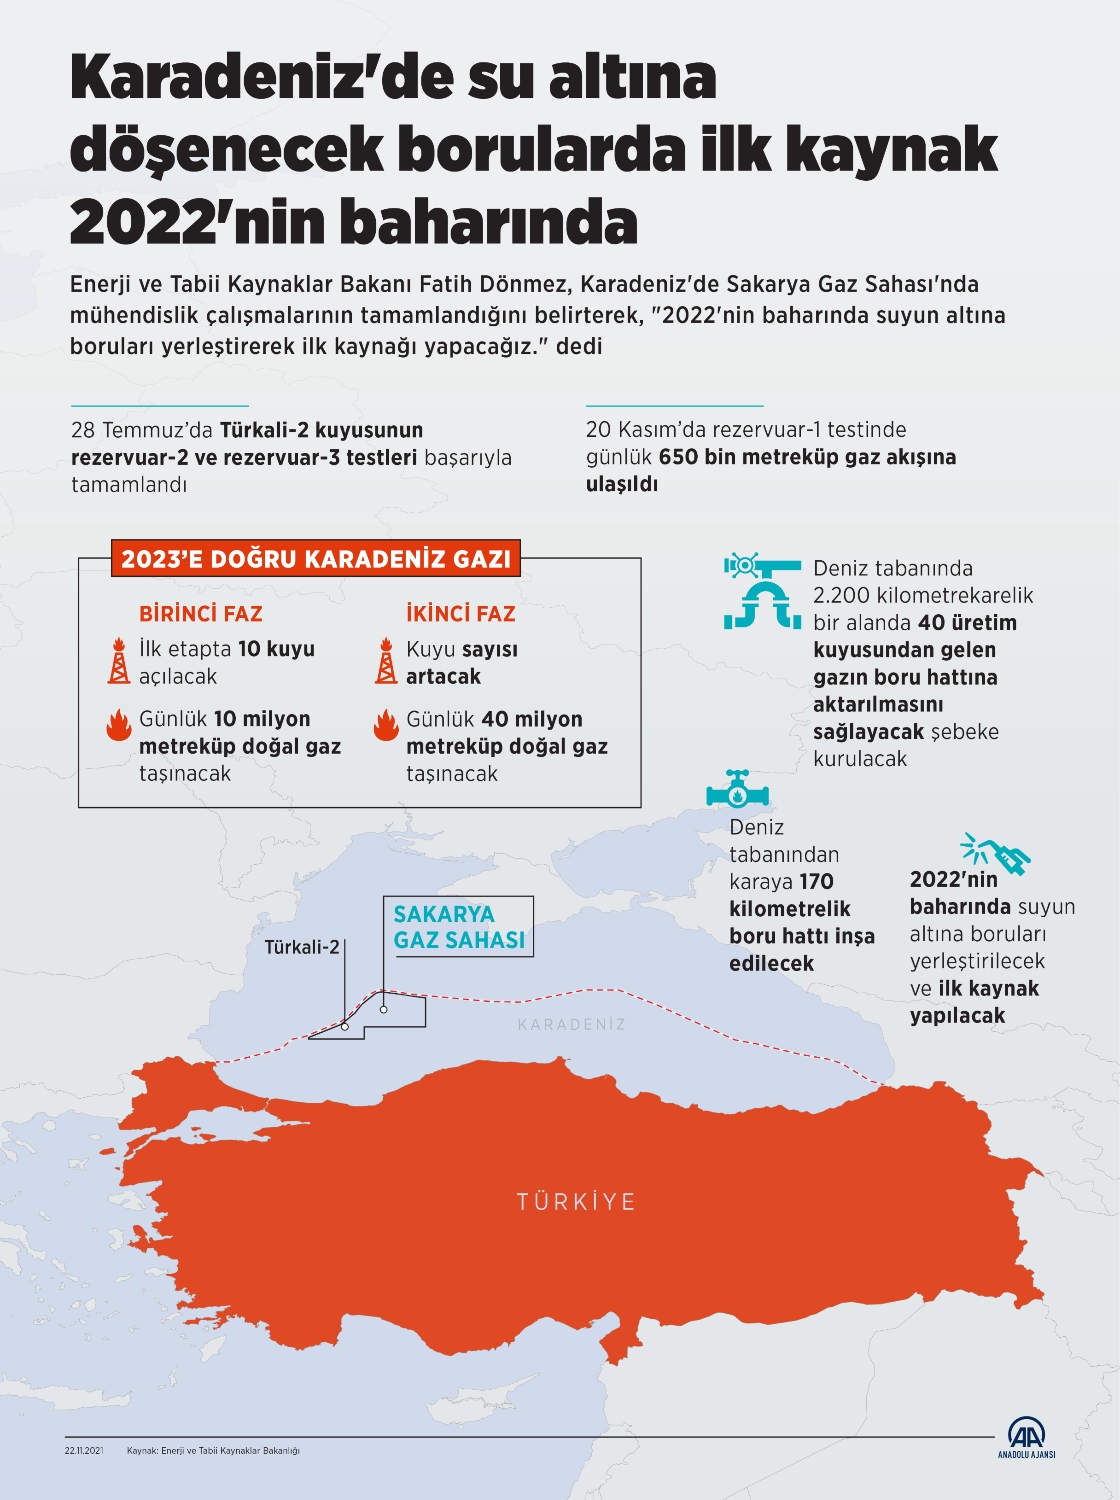 Karadeniz'de su altına döşenecek borularda ilk kaynak 2022'nin baharında